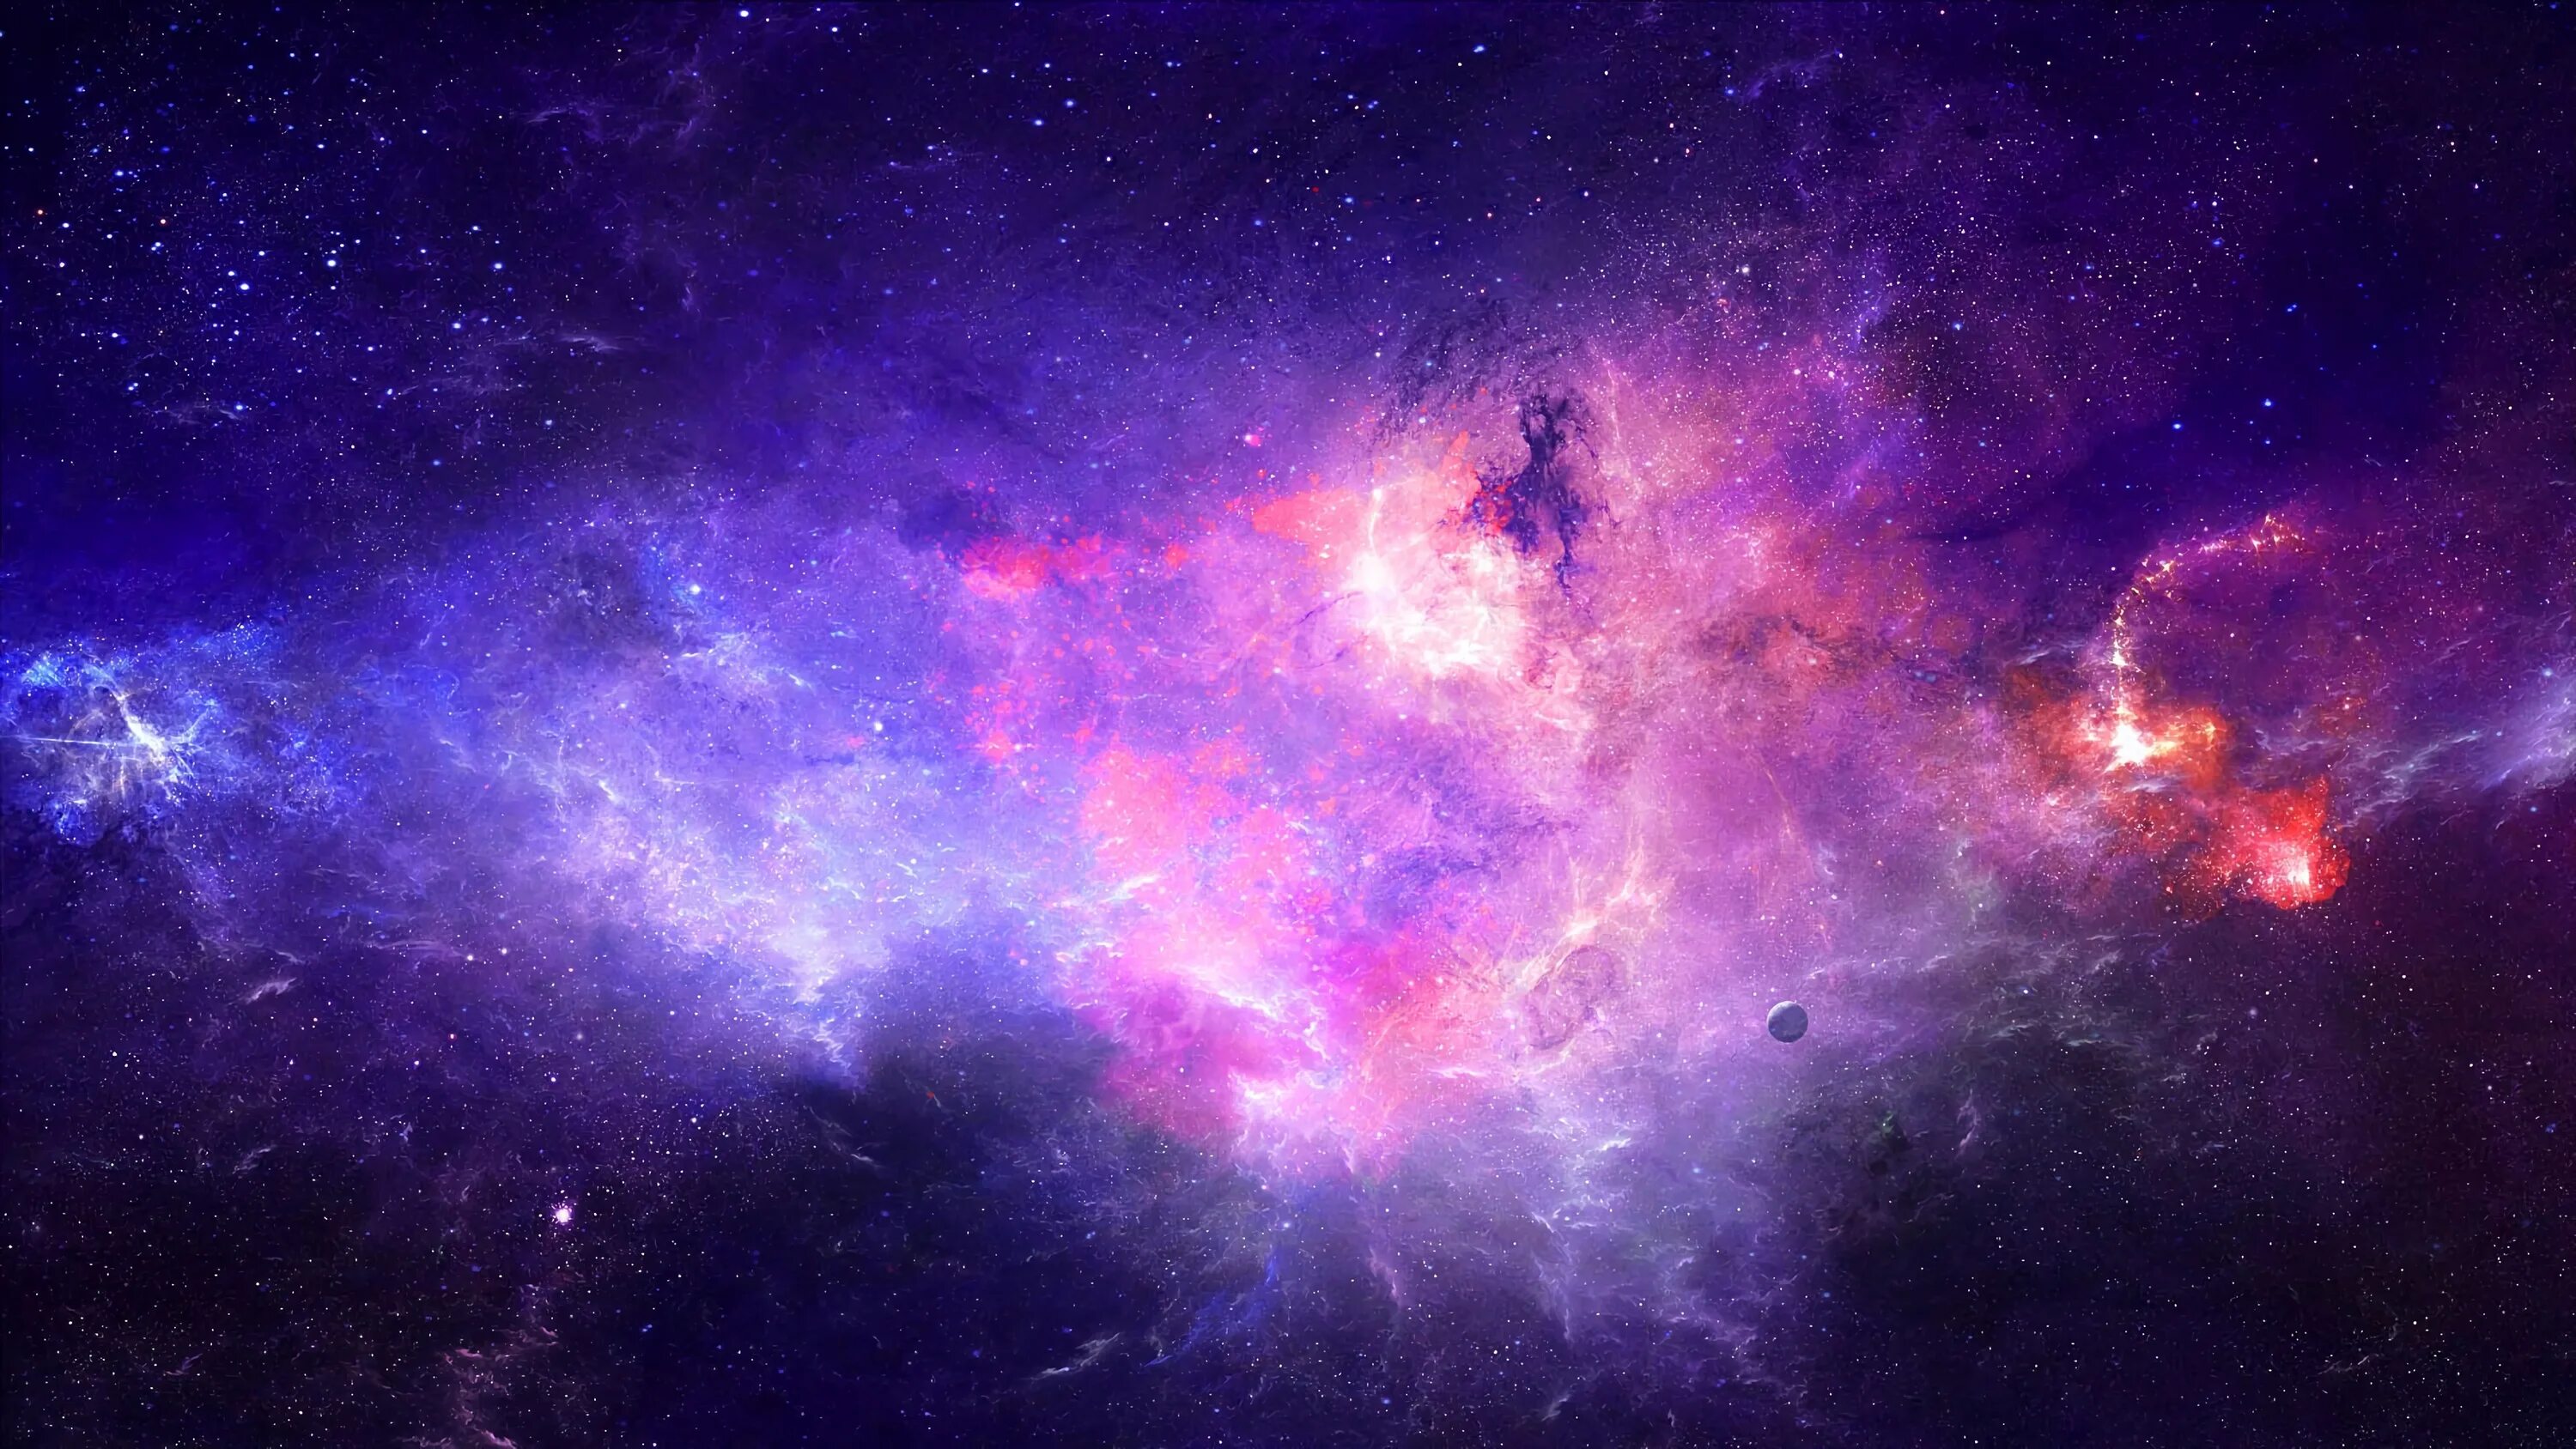 Qhd 2560x1440. Космический фон. Фон Галактика. Картинки на рабочий стол космос.